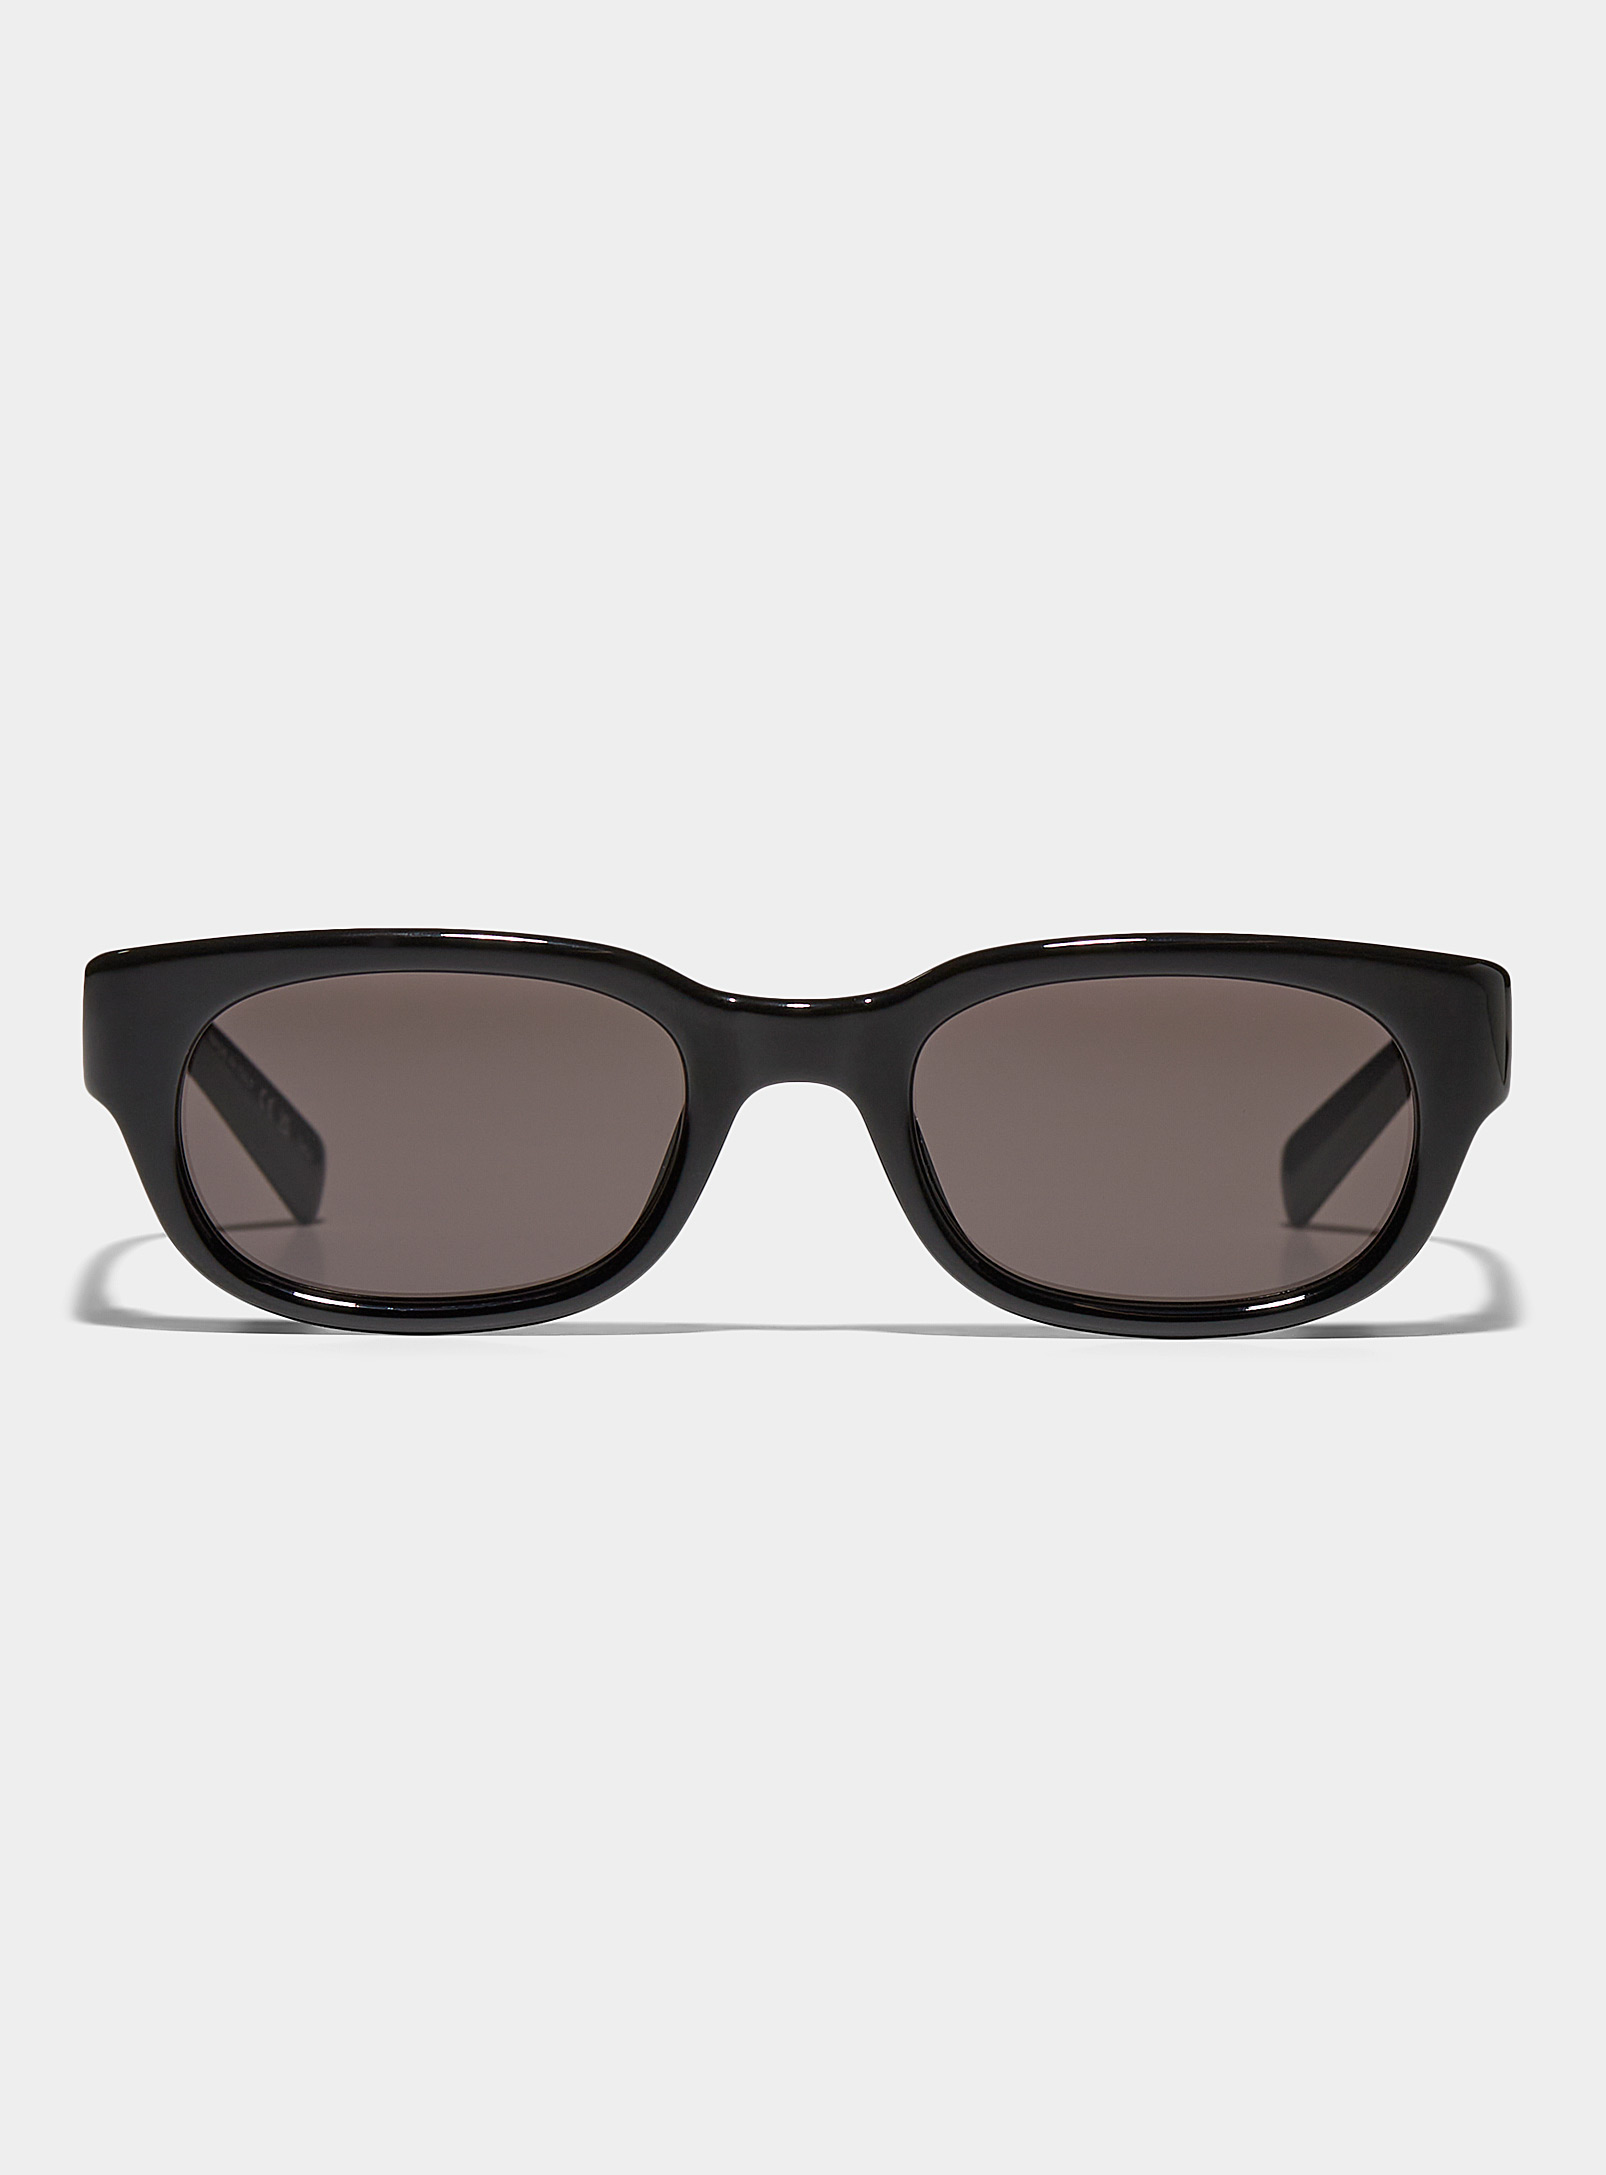 Saint Laurent Translucent Oval Sunglasses In Black